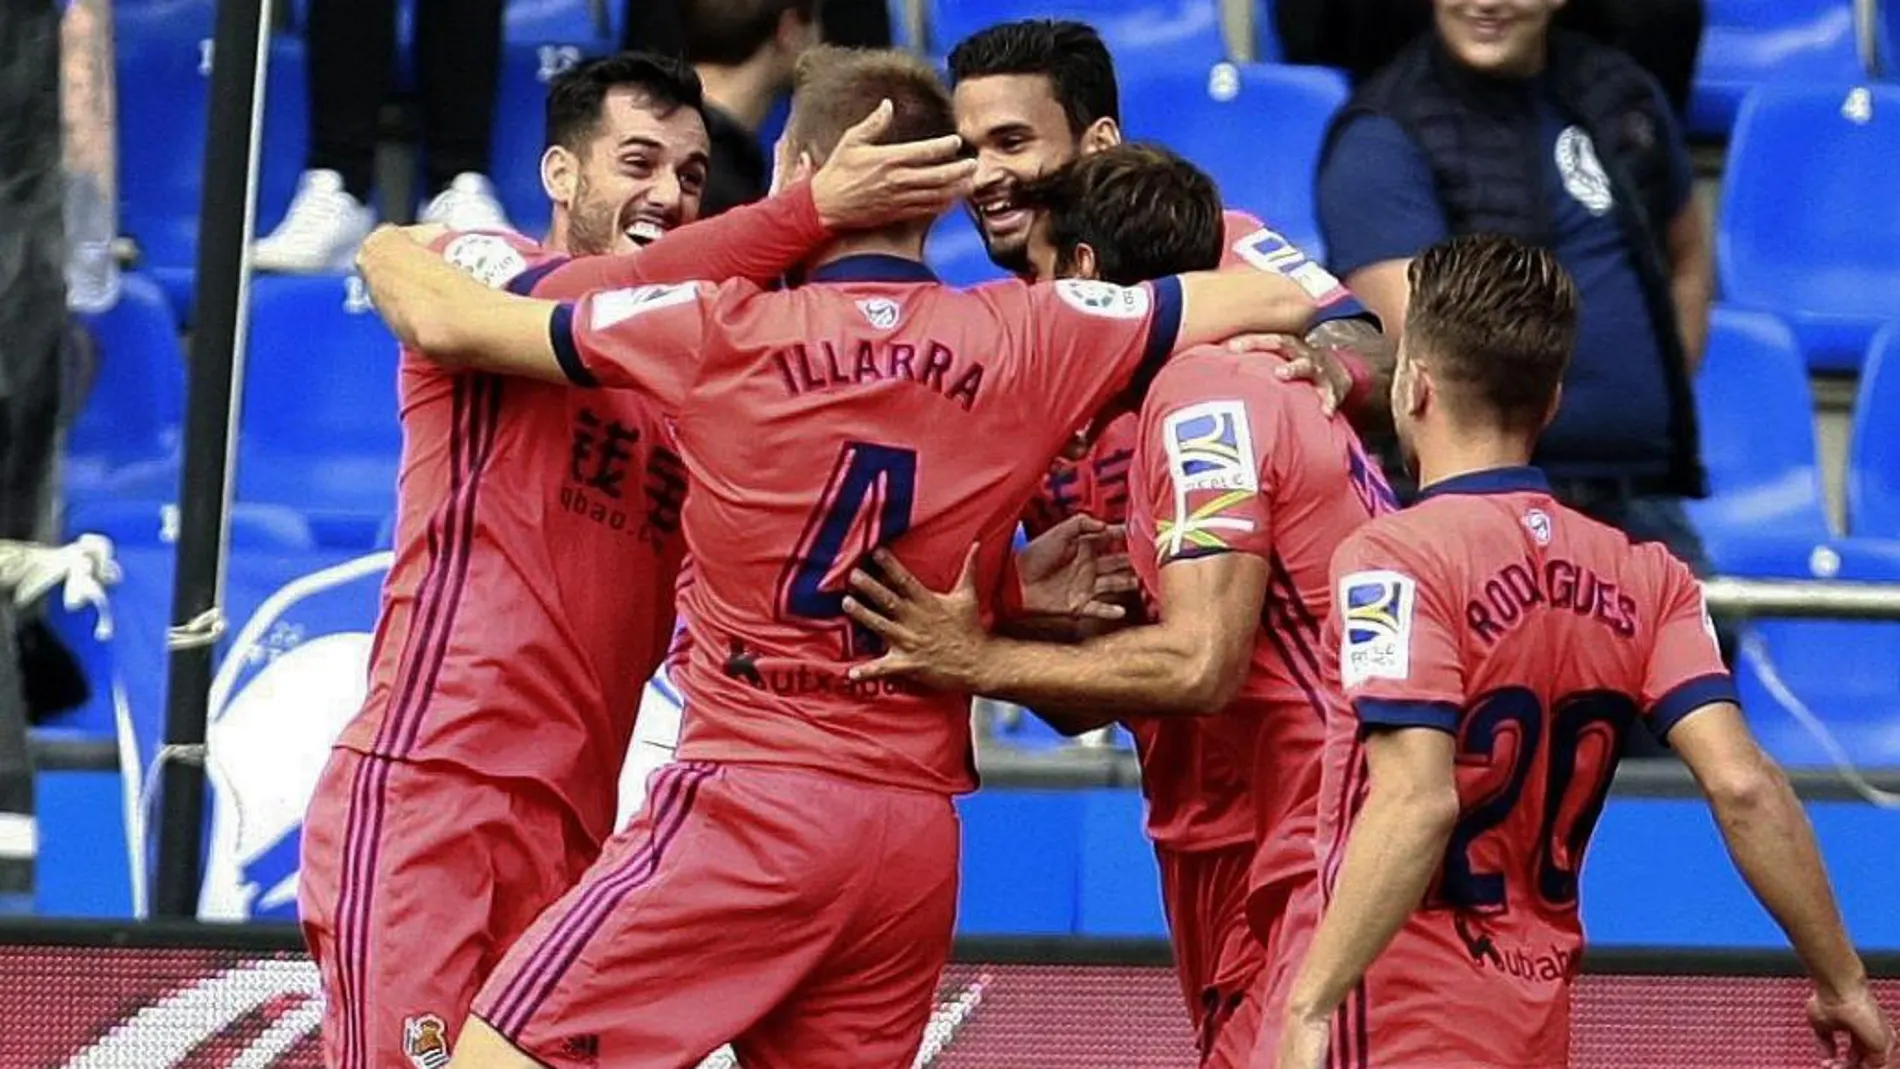 El centrocampista de la Real Sociedad Asier Illarramendi celebra con sus compañeros el gol conseguido ante el Deportivo de la Coruña, segundo para el conjunto vasco